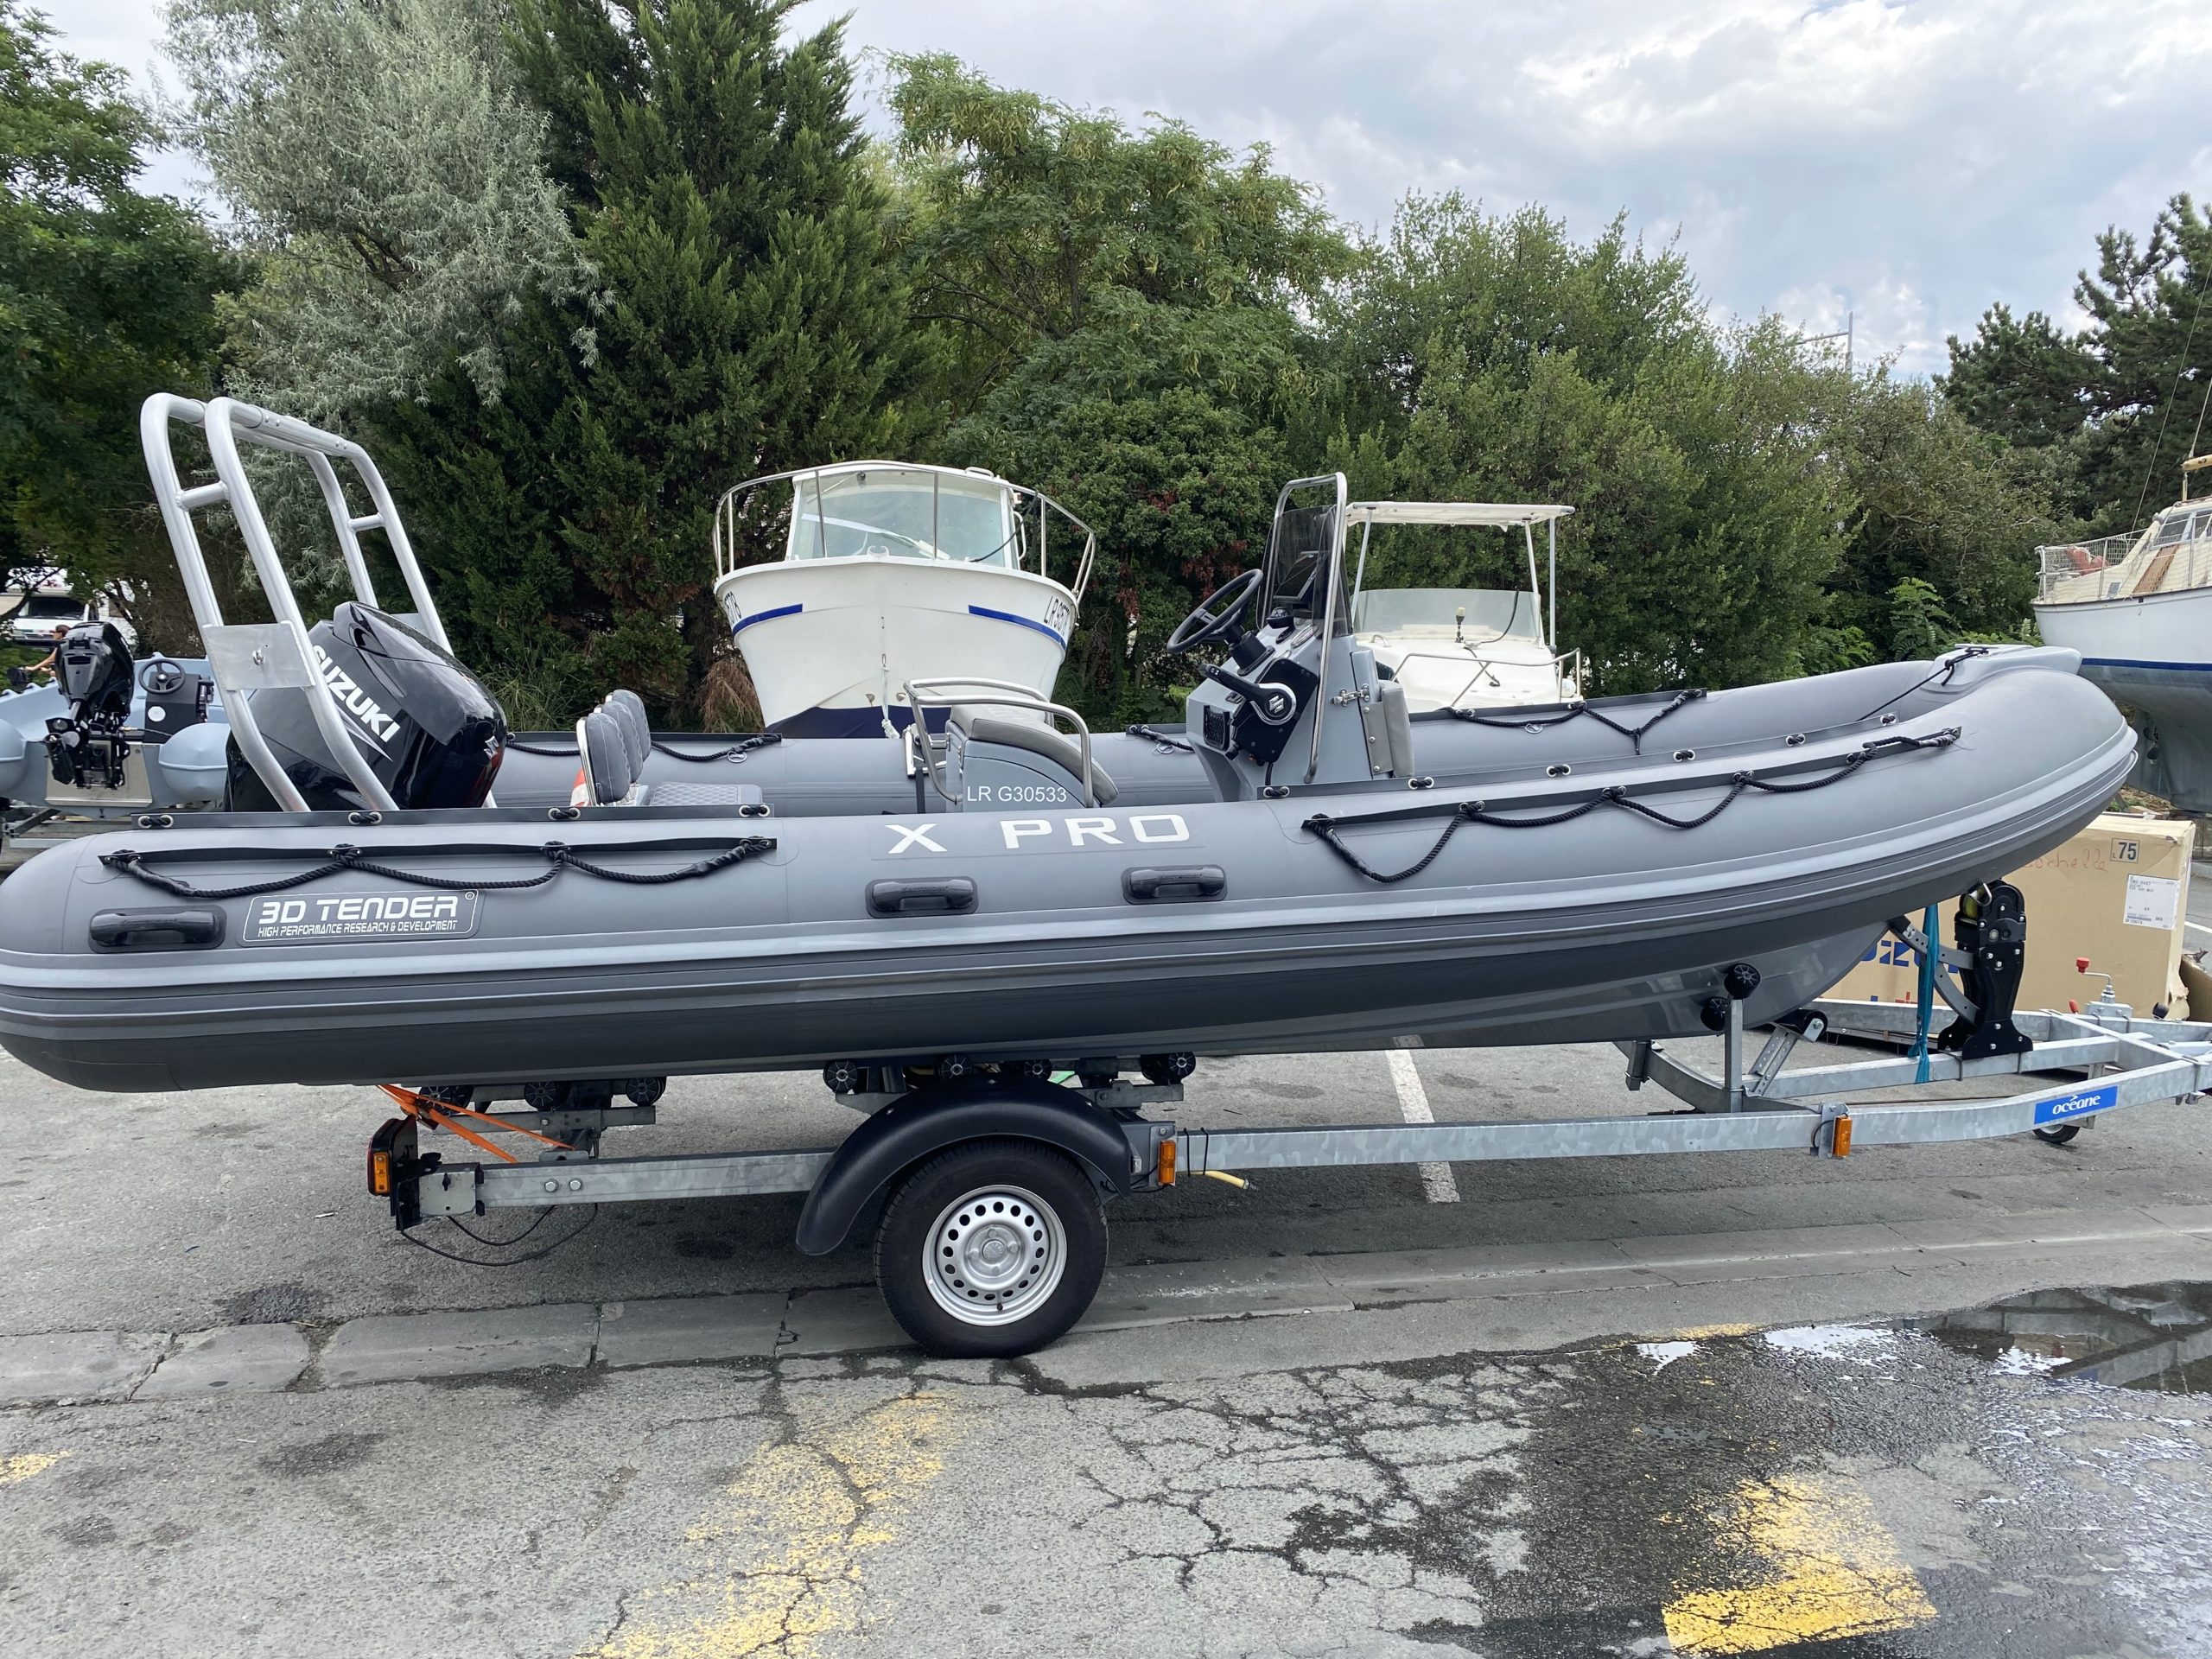 Nautique Services la Rochelle - Vente et entretien bateau - 3D Tender Xpro 589